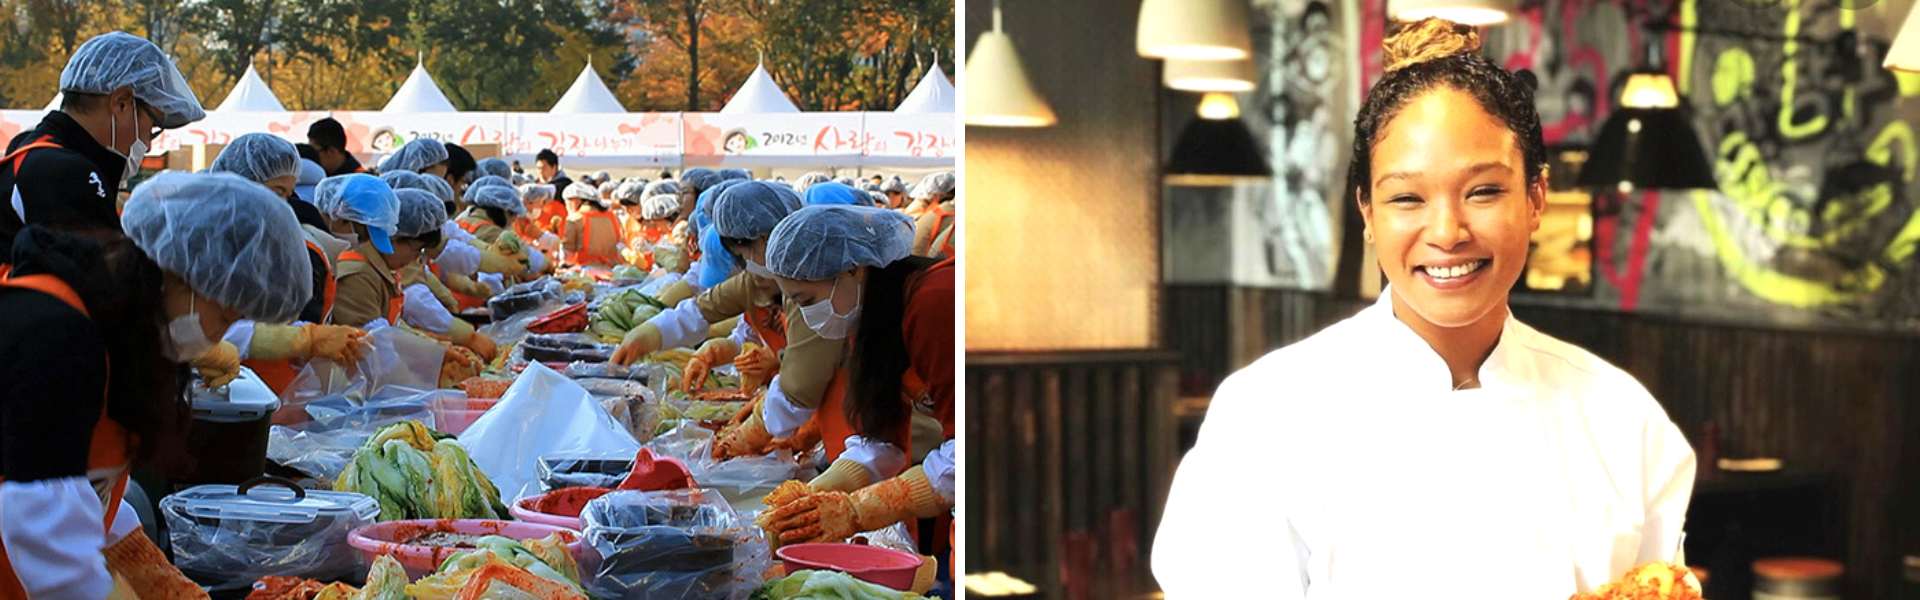 왼쪽: 한국에서 열린 김장문화 행사 / 오른쪽: 요리사 패트리스 커닝햄 사진